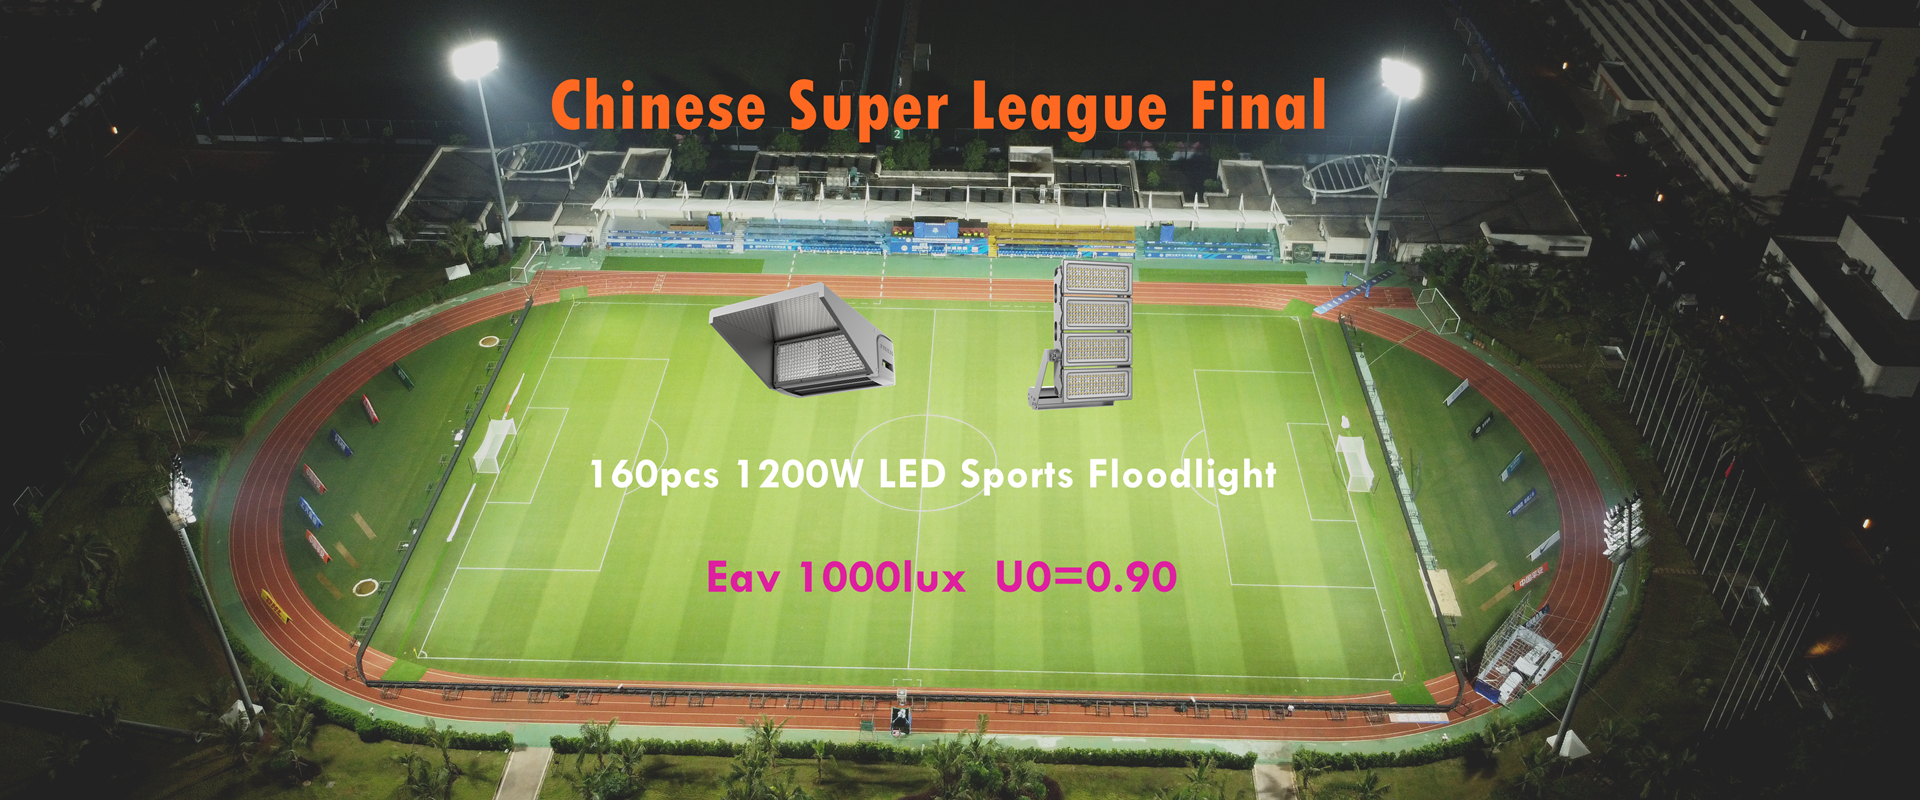 Projecteur de sport à LED 1200W pour la super ligue chinoise 2022 dans le stade de football de Haikou